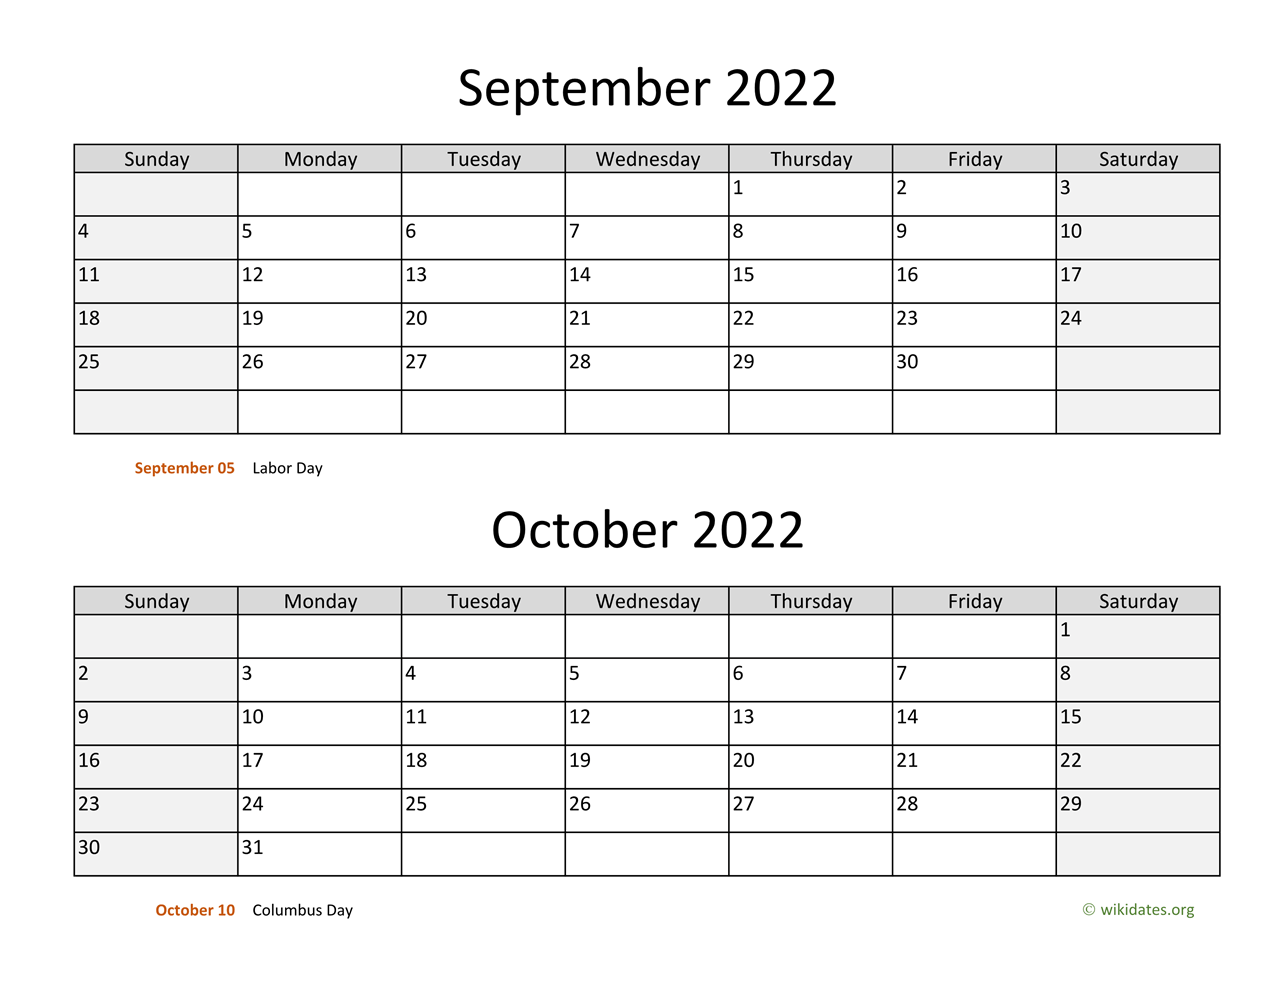 September And October 2022 Calendar September And October 2022 Calendar | Wikidates.org